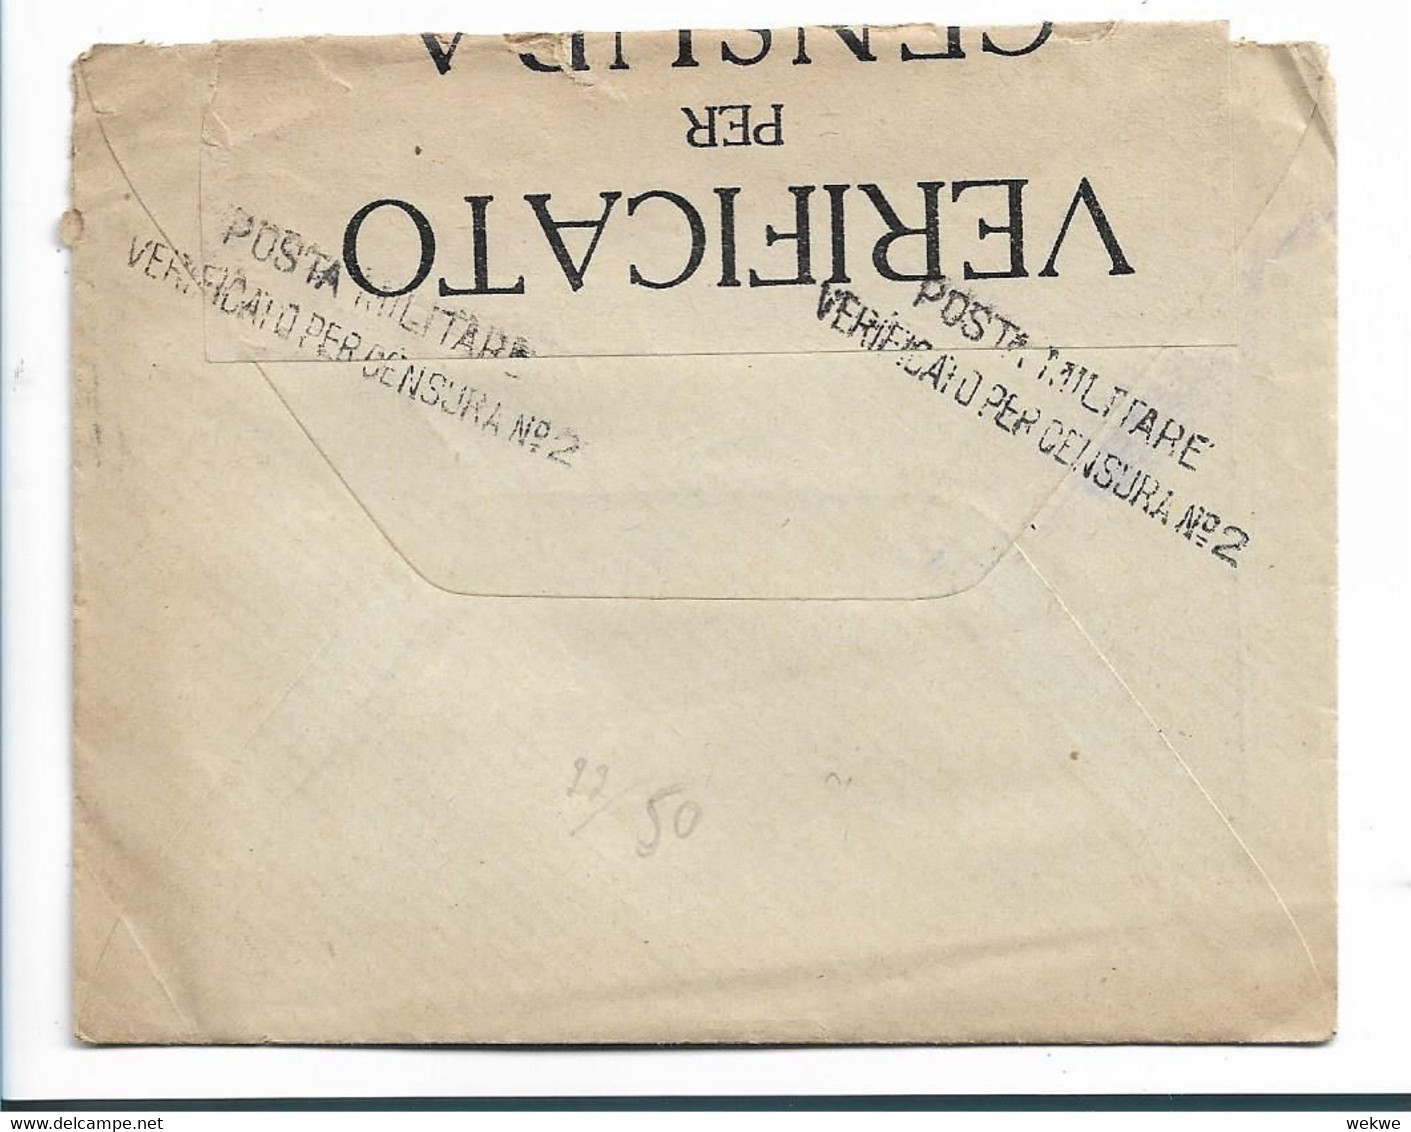 Alb049 / ALBANIEN - Ital. Feldpost Nr. 1 1917 Nach Paris Mit Briefinhalt, Strafportostempel, 2-fach Zensiert. - Albania